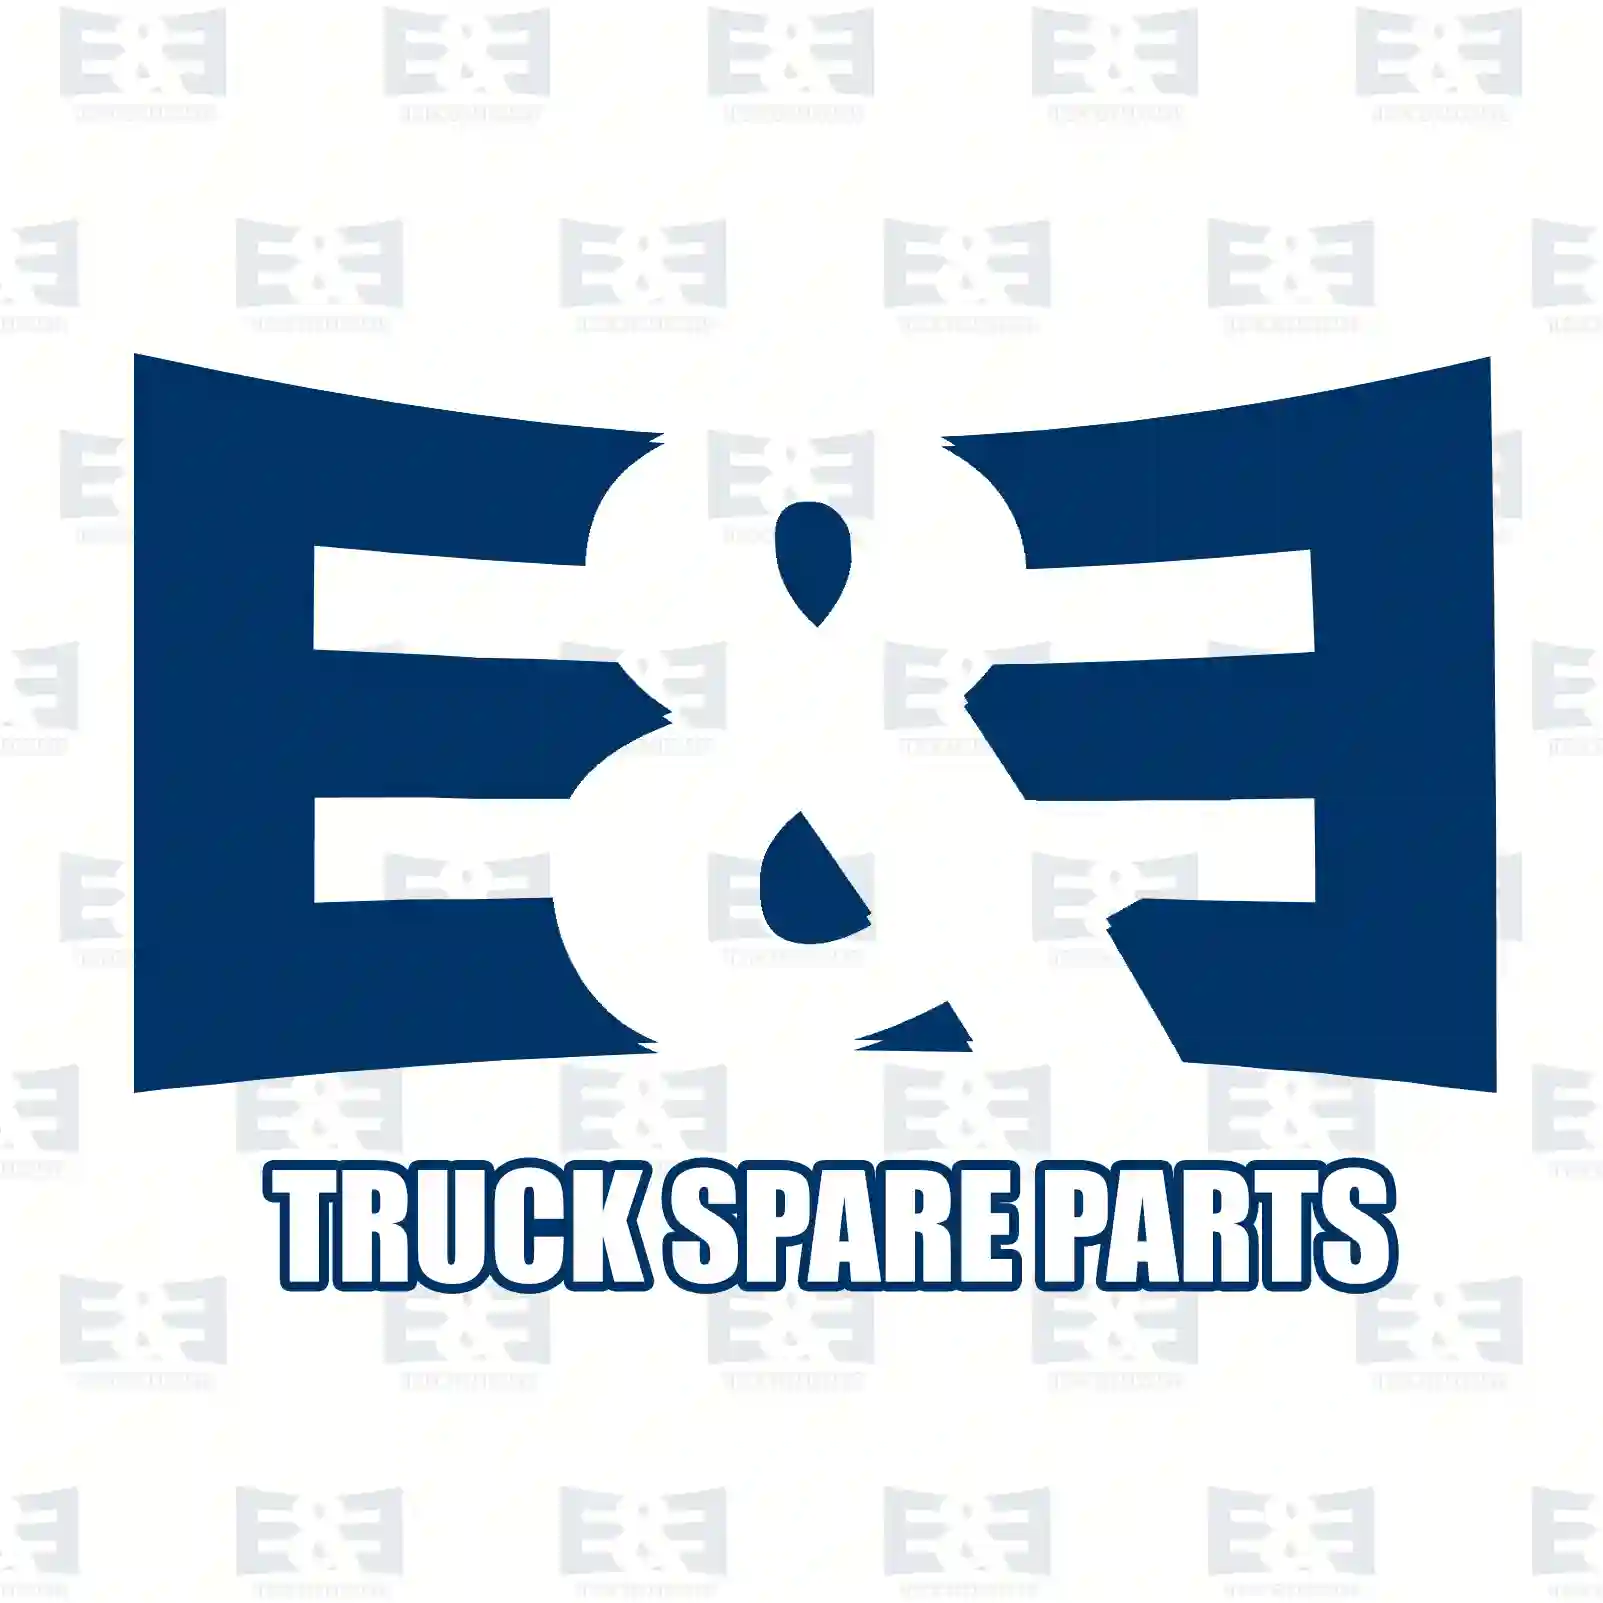 Thermostat, 2E2202268, 04911831, 7420914594, 7421061992, 7421360430, 7421705453, 20914594, 20915095, 21033829, 21061992, 21062702, 21360429, 21360430, 21705453, ZG00666-0008 ||  2E2202268 E&E Truck Spare Parts | Truck Spare Parts, Auotomotive Spare Parts Thermostat, 2E2202268, 04911831, 7420914594, 7421061992, 7421360430, 7421705453, 20914594, 20915095, 21033829, 21061992, 21062702, 21360429, 21360430, 21705453, ZG00666-0008 ||  2E2202268 E&E Truck Spare Parts | Truck Spare Parts, Auotomotive Spare Parts